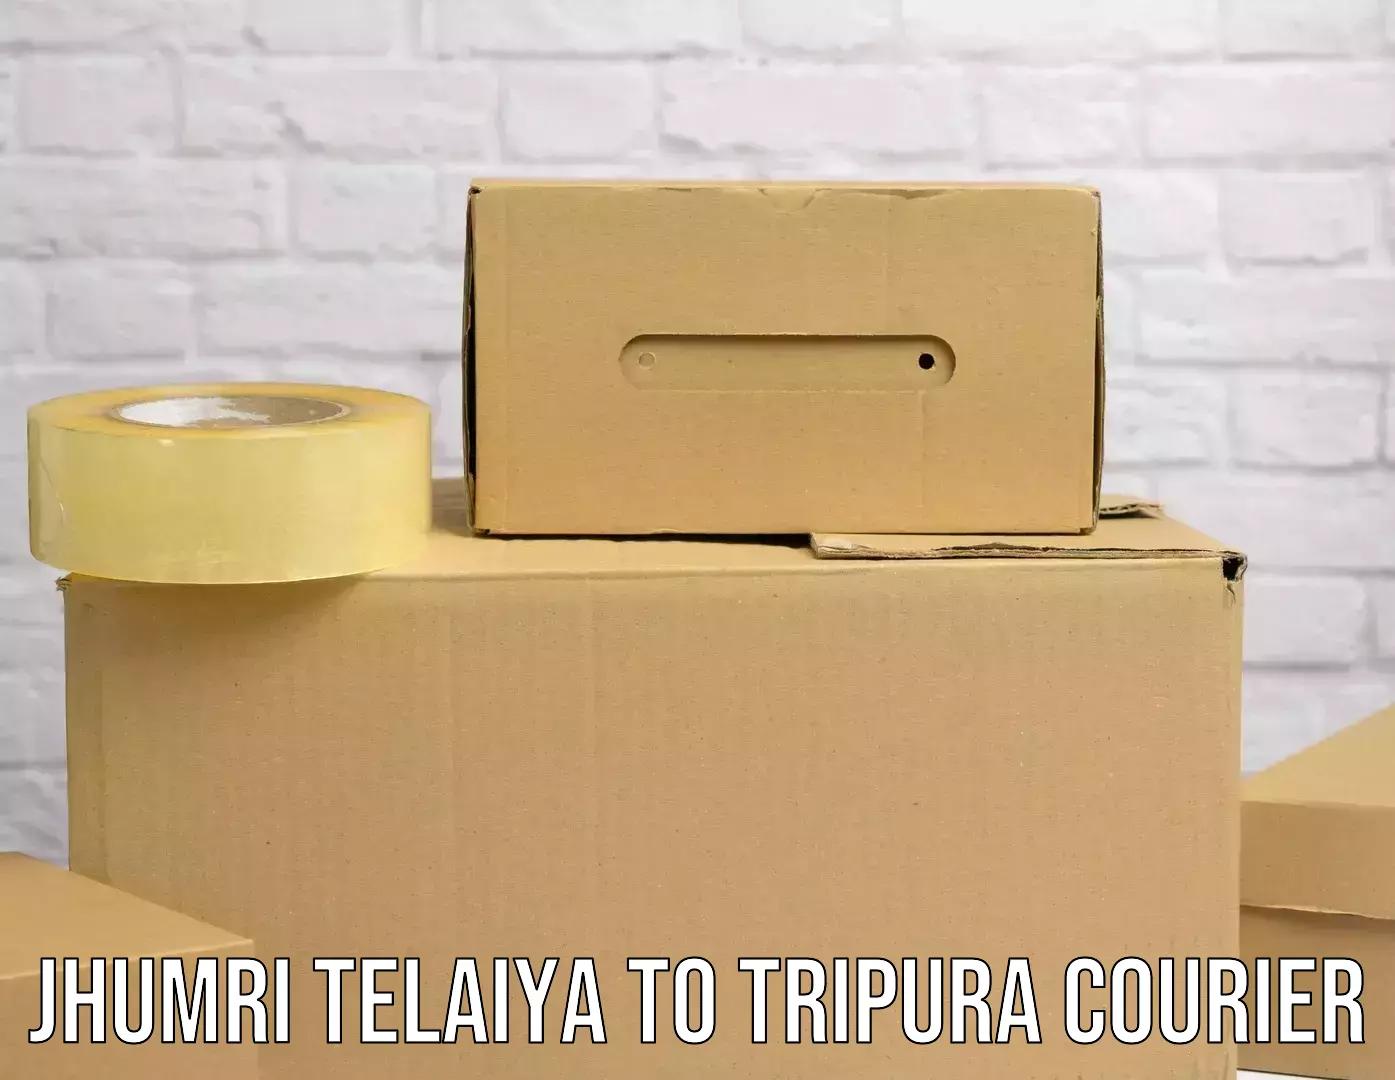 Express delivery solutions Jhumri Telaiya to Tripura